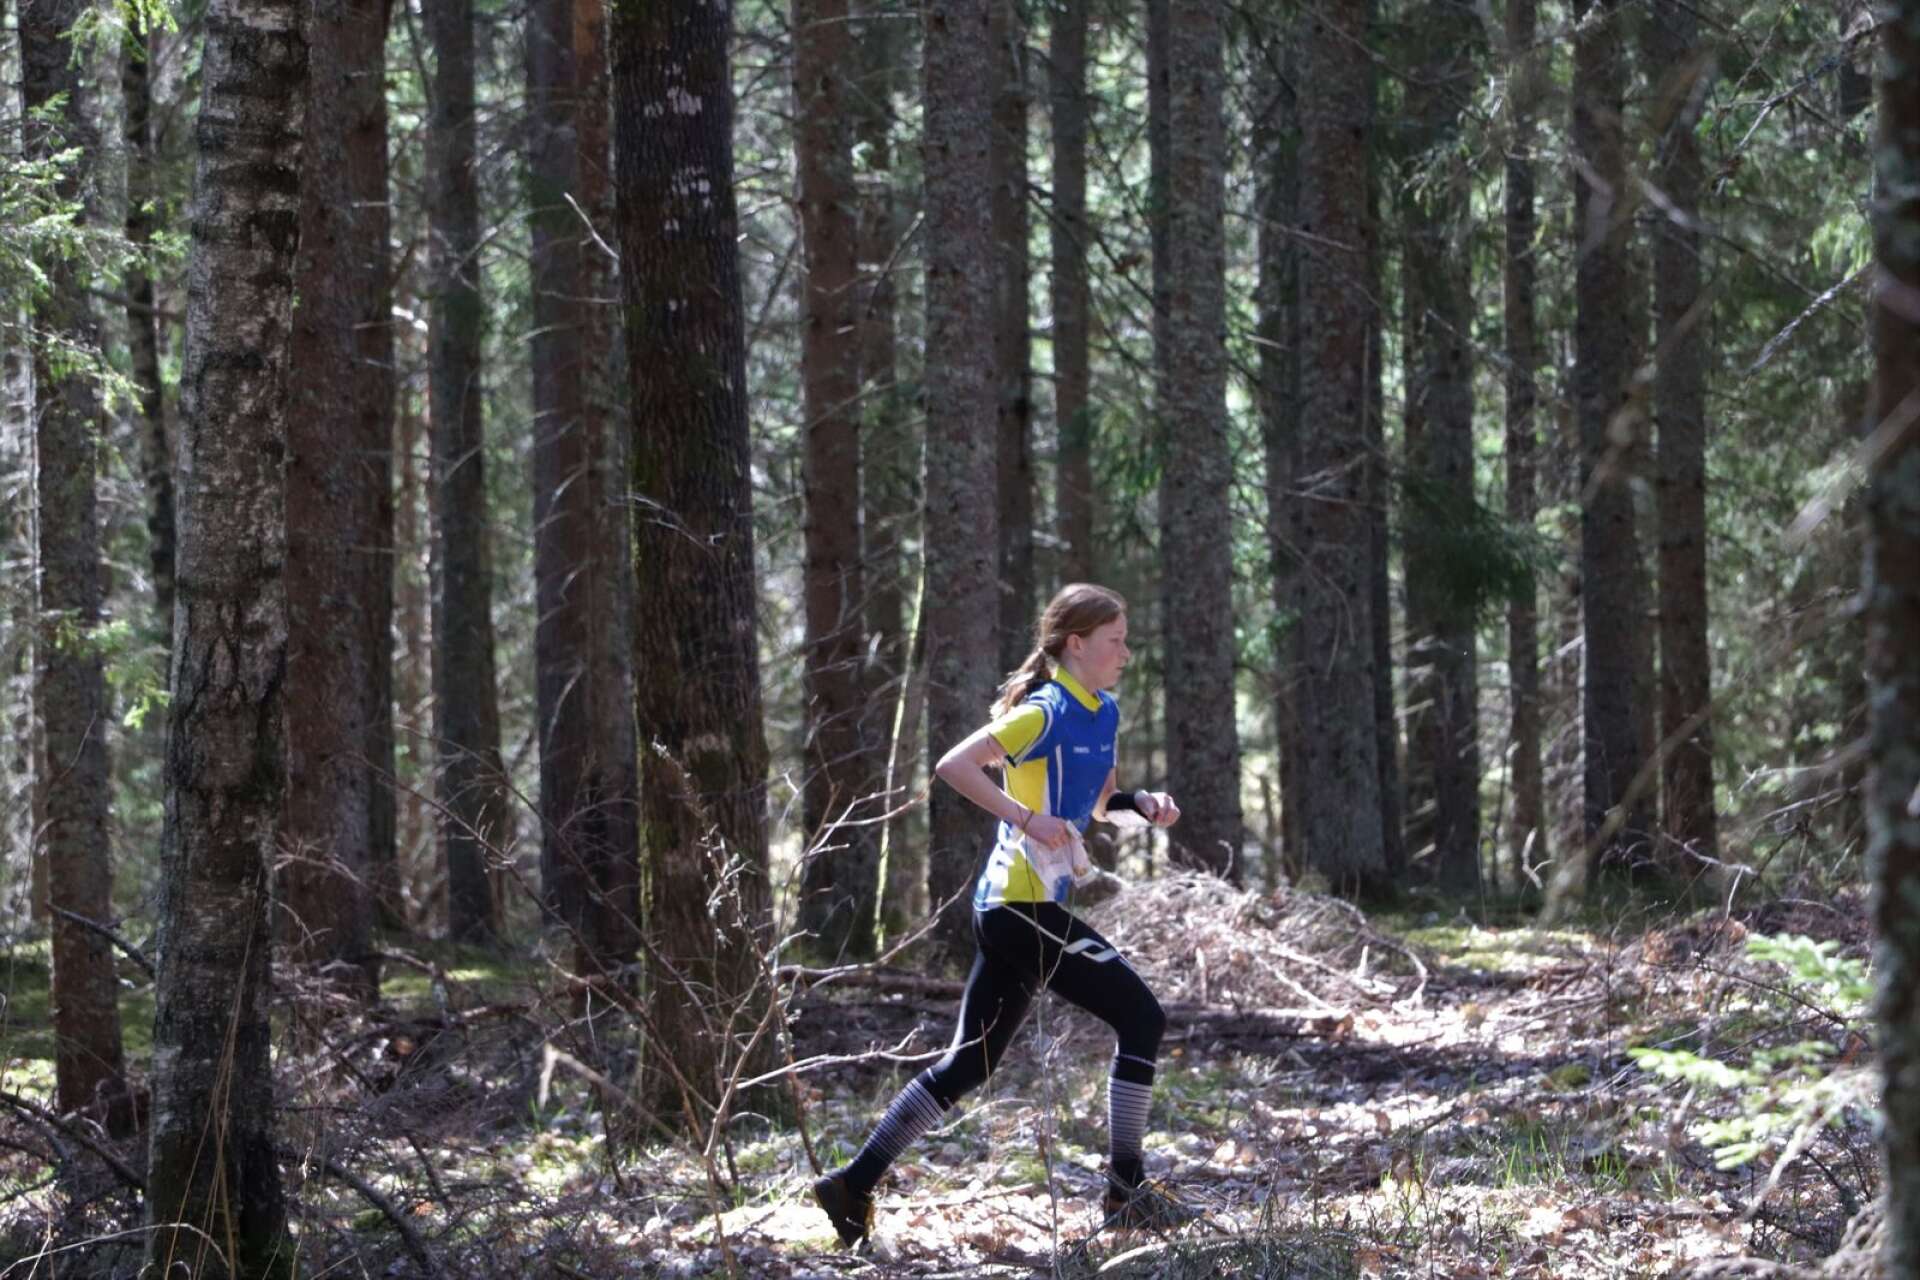 Jonna Åhl från Åmåls OK sveper fram i den glesa tallskogen utanför Värmskog under den andra dagen av Värmlandstrippeln. Hon vann D14-klassen.